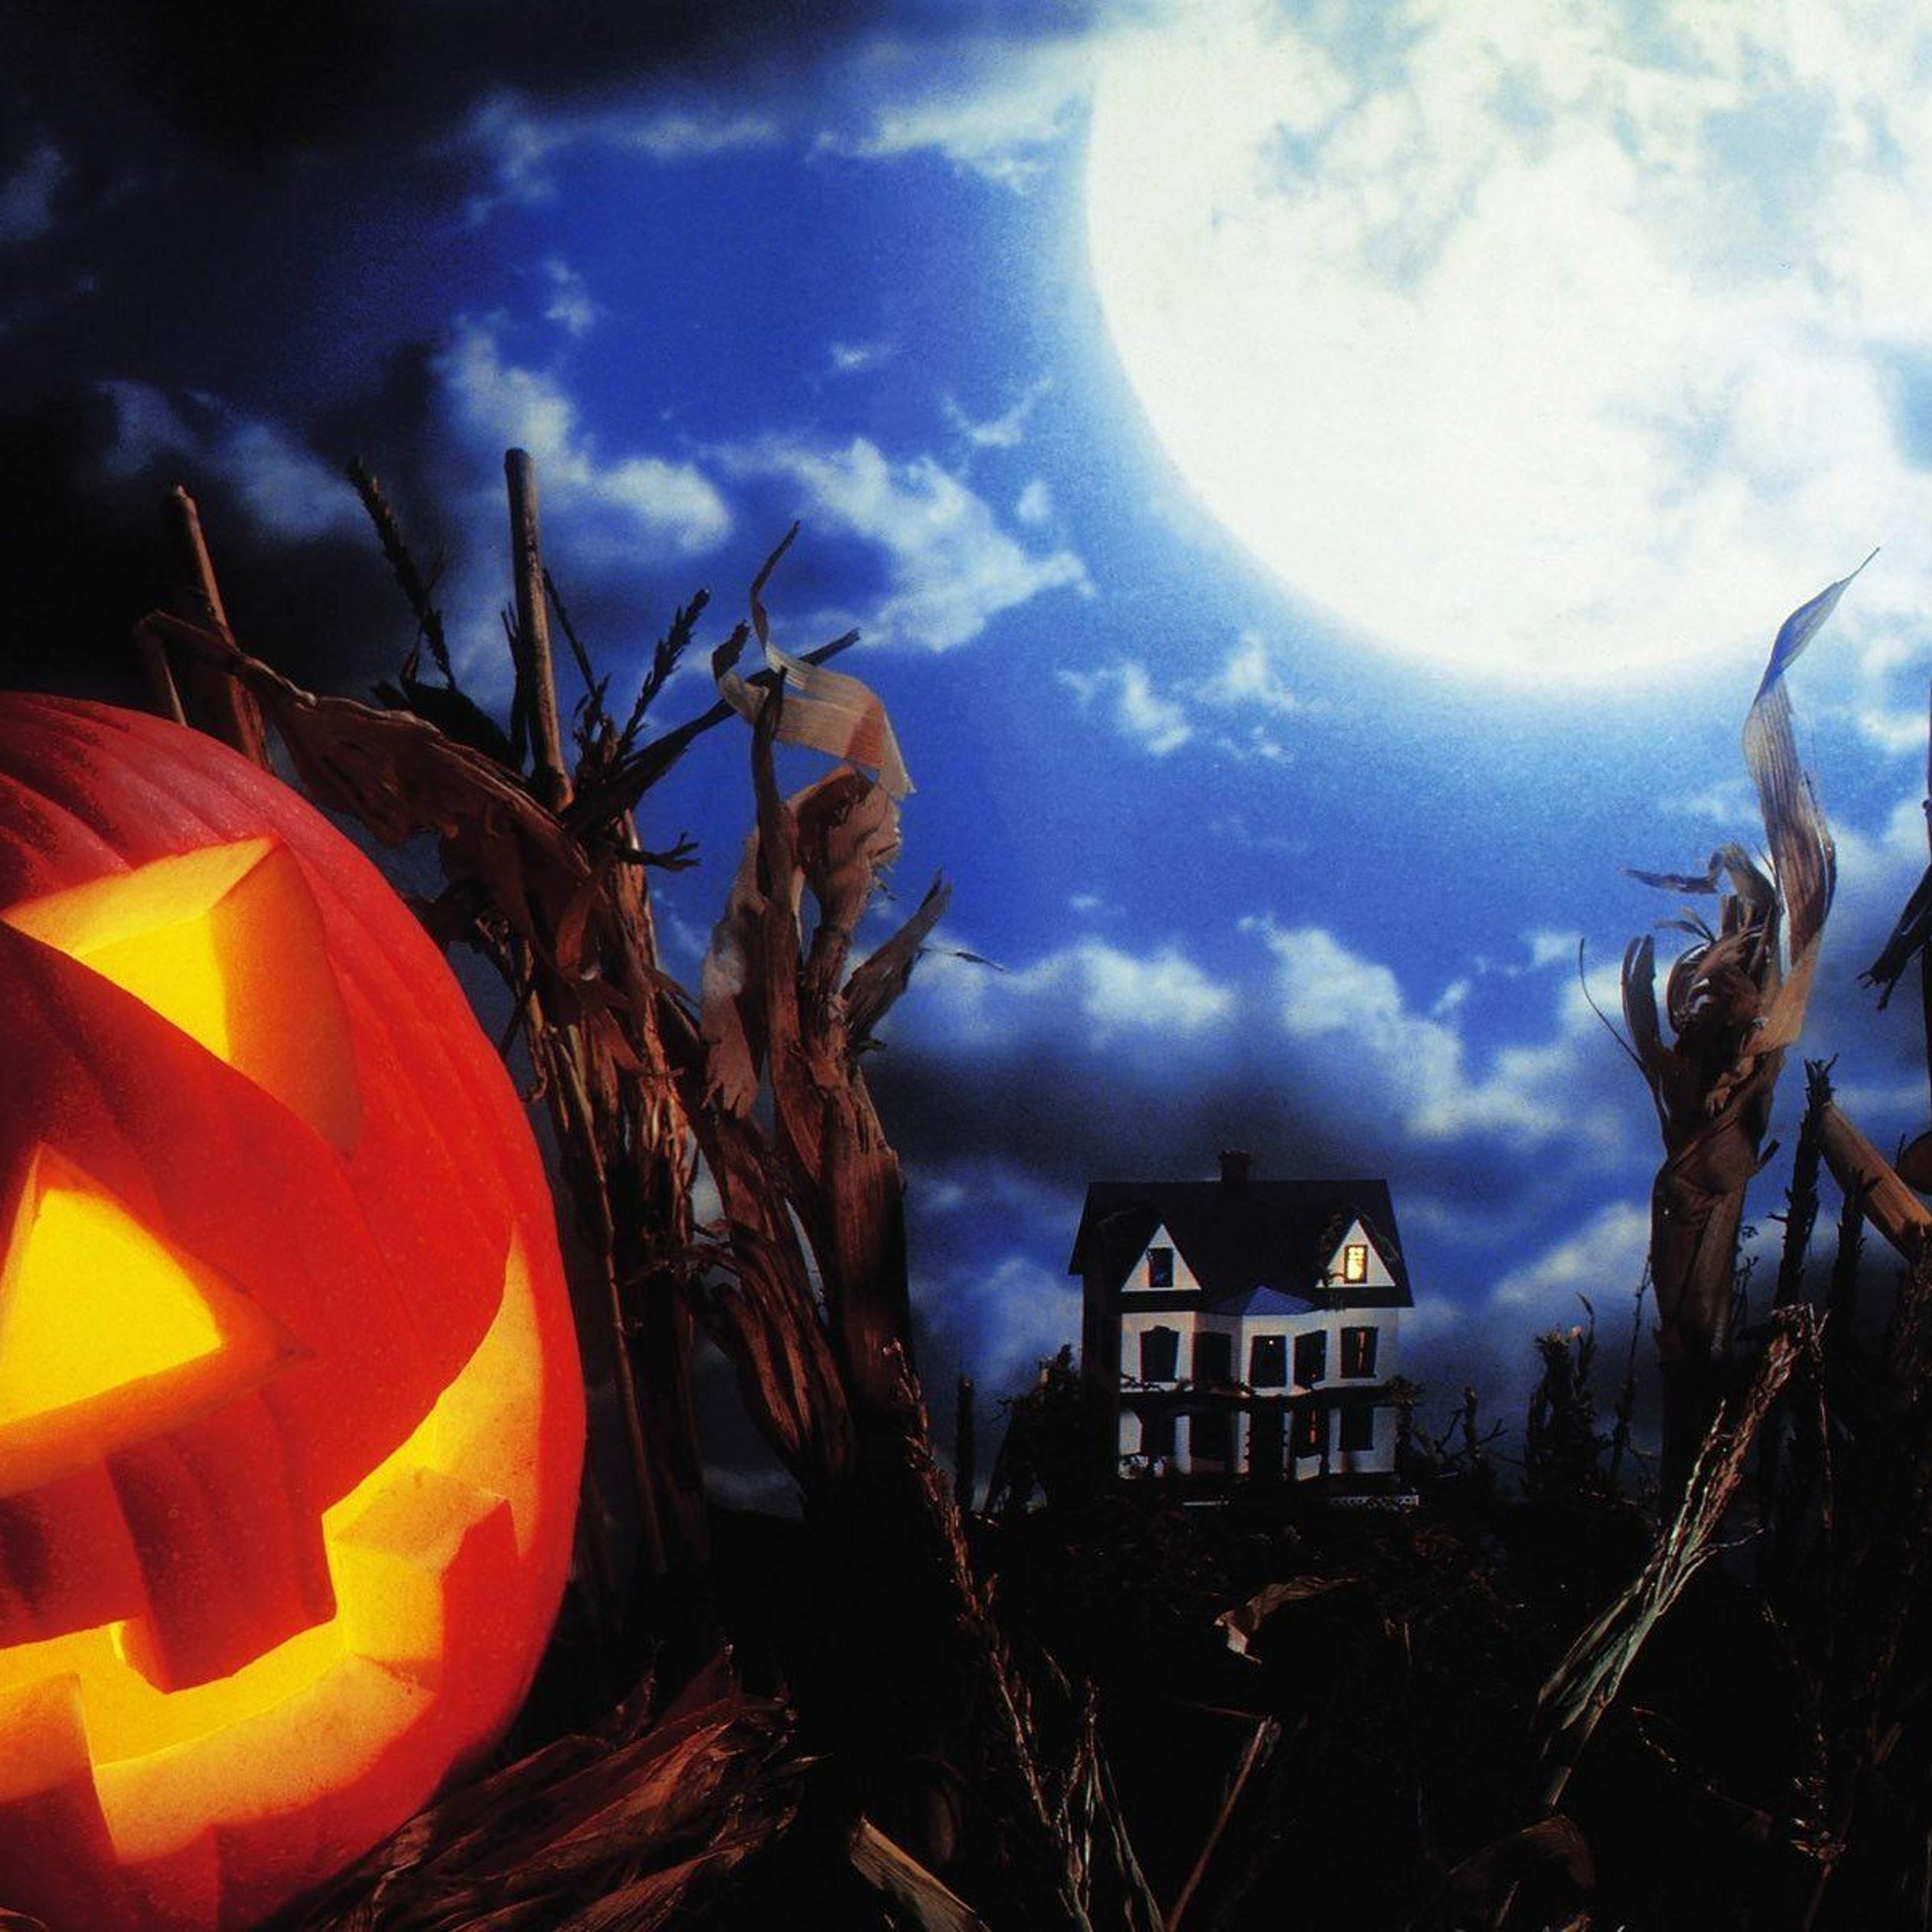 Big moon and scary Halloween pumpkin